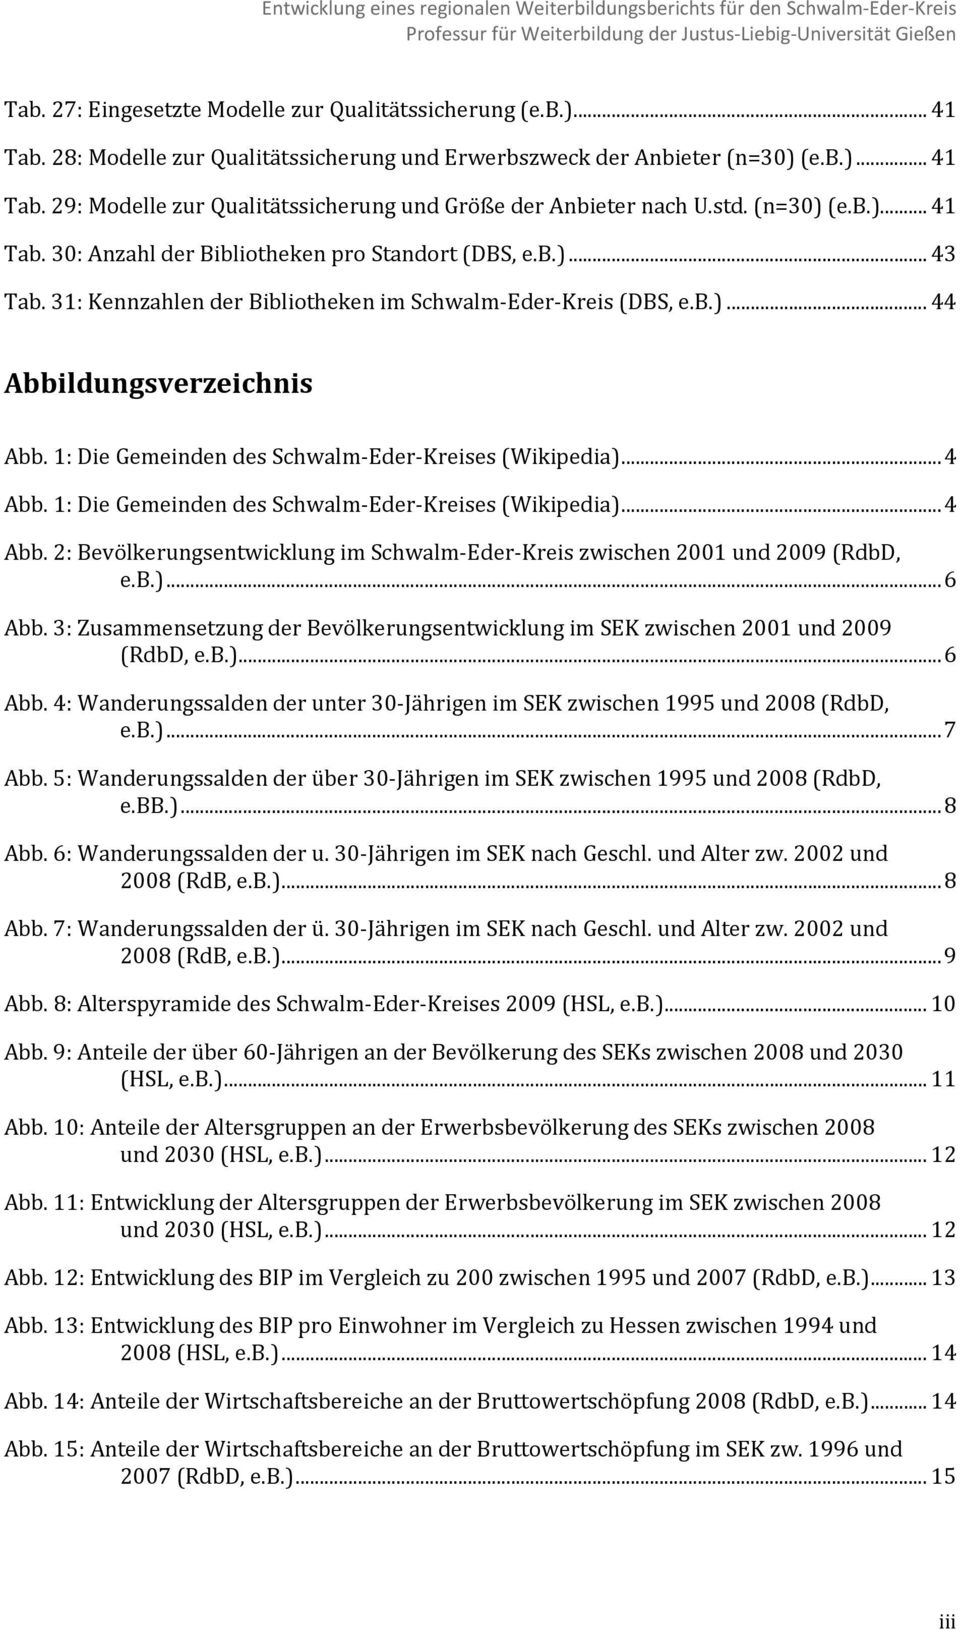 1: Die Gemeinden des Schwalm Eder Kreises (Wikipedia)... 4 Abb. 1: Die Gemeinden des Schwalm Eder Kreises (Wikipedia)... 4 Abb. 2: Bevölkerungsentwicklung im Schwalm Eder Kreis zwischen 2001 und 2009 (RdbD, e.